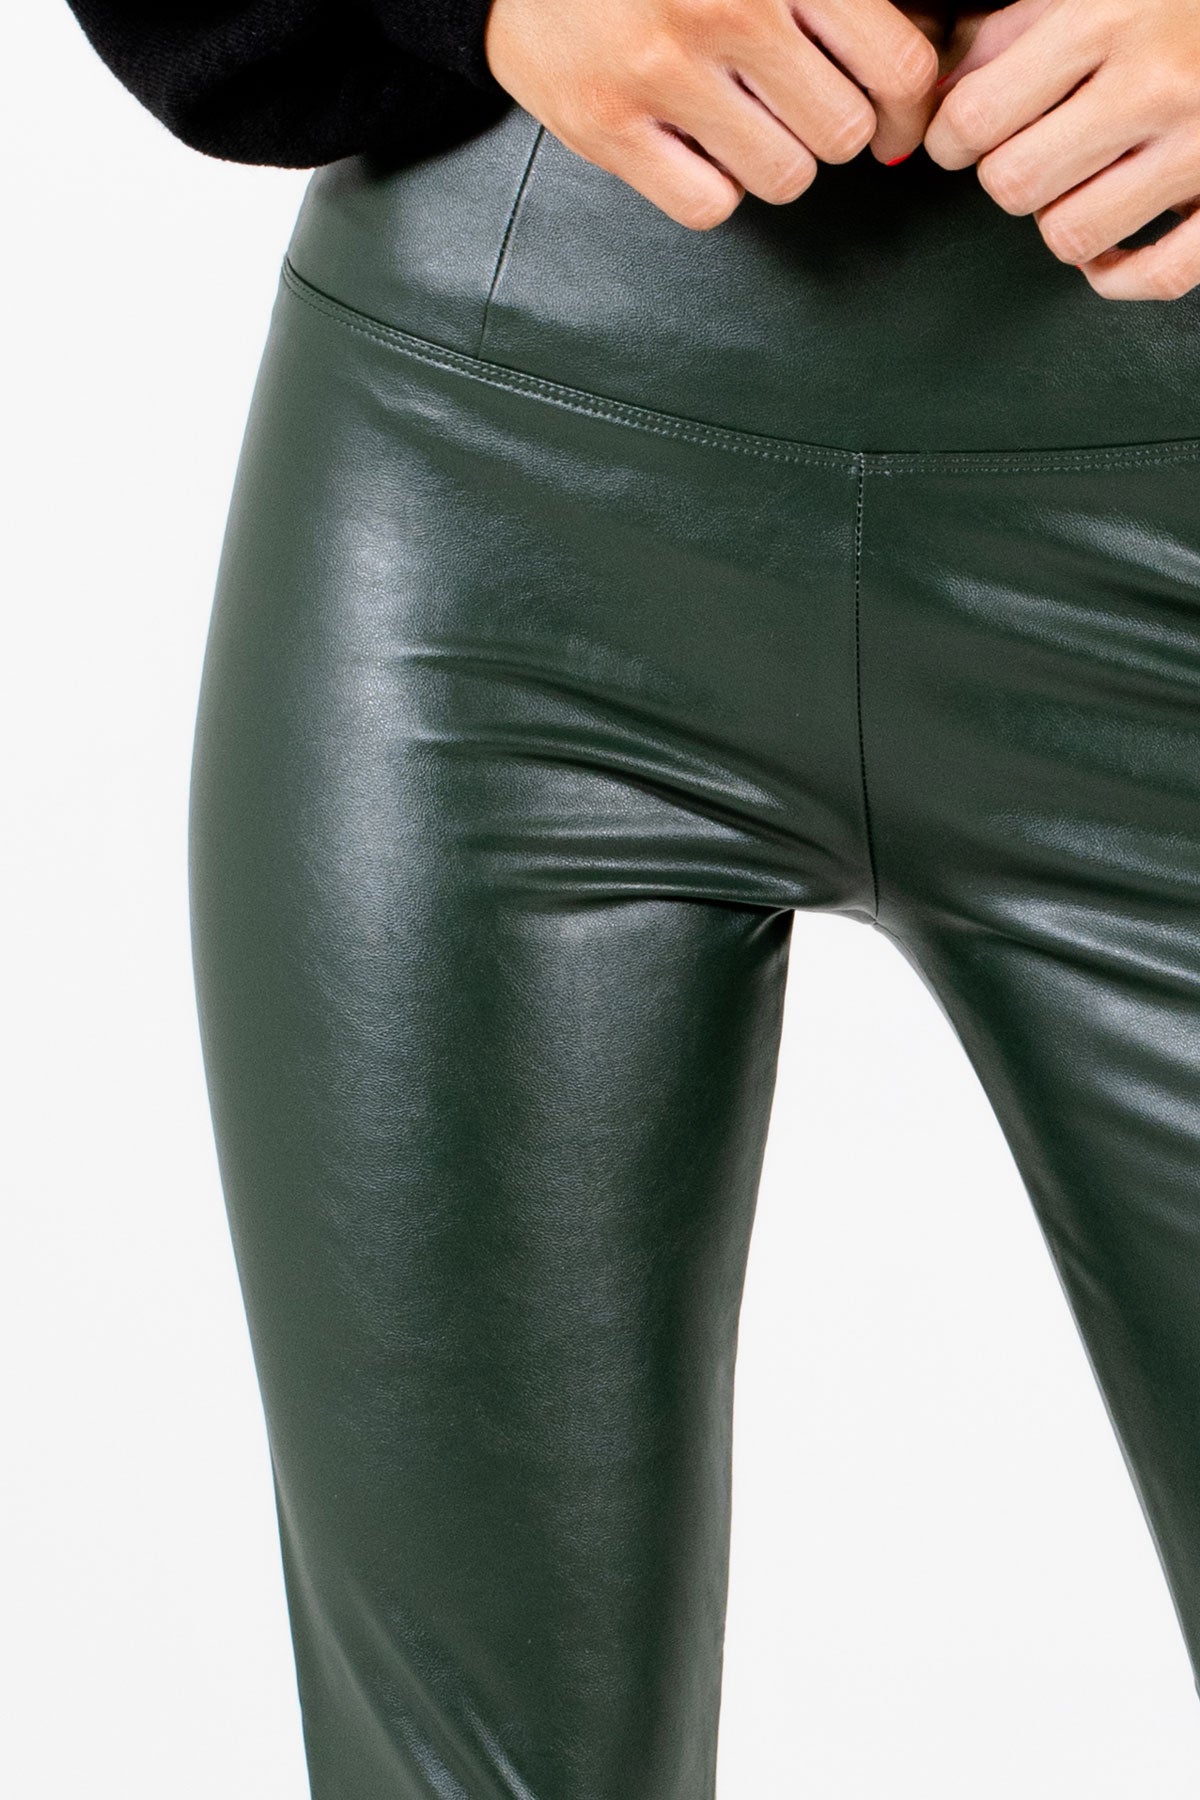 Buy Forever New Black Leather Leggings for Women's Online @ Tata CLiQ